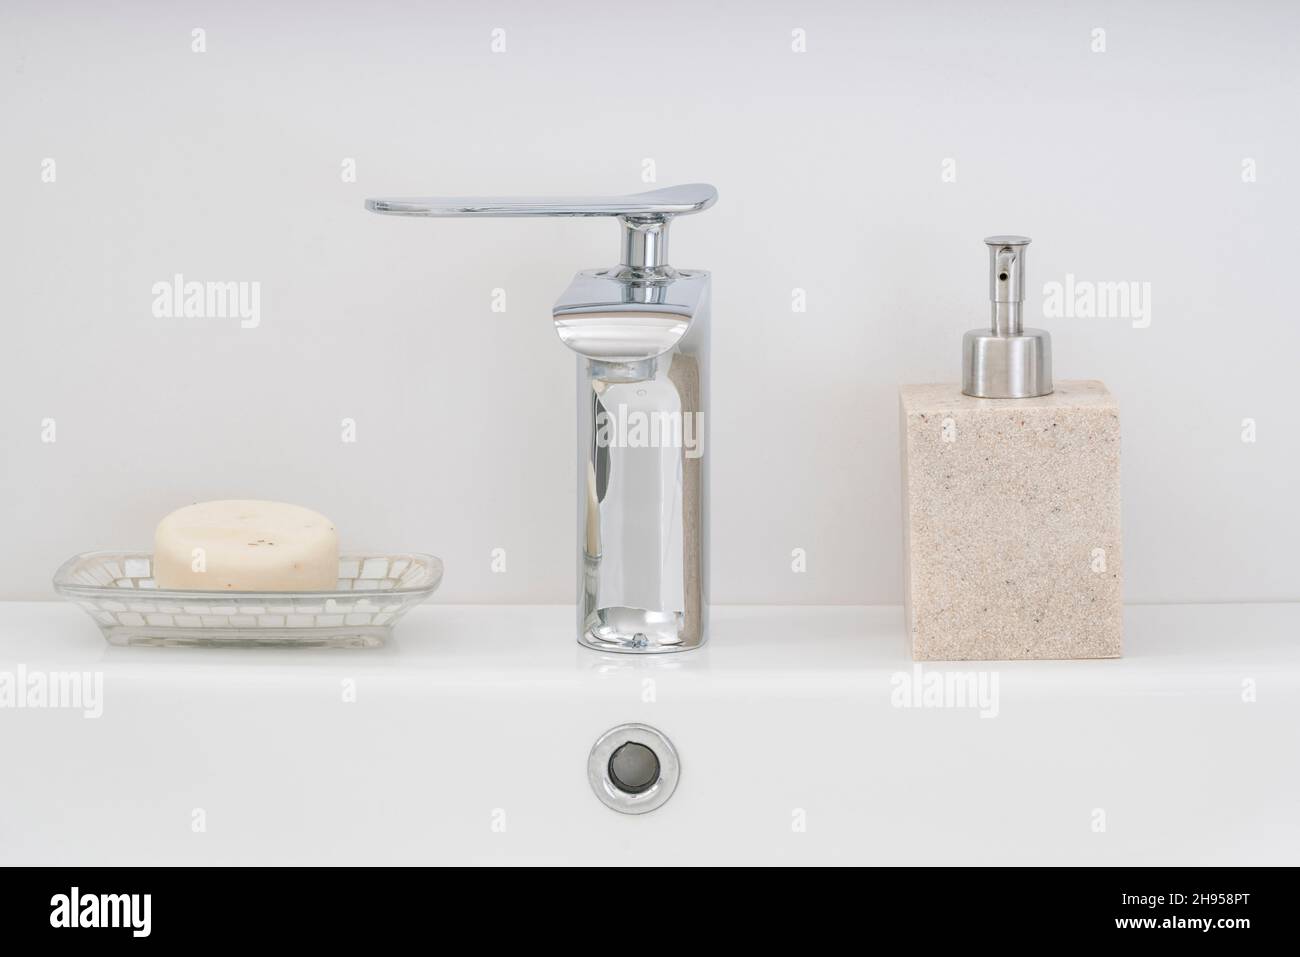 lavabo de salle de bains, robinets et savons sur blanc et propre lavabo de salle de bains. intérieur de la maison Banque D'Images